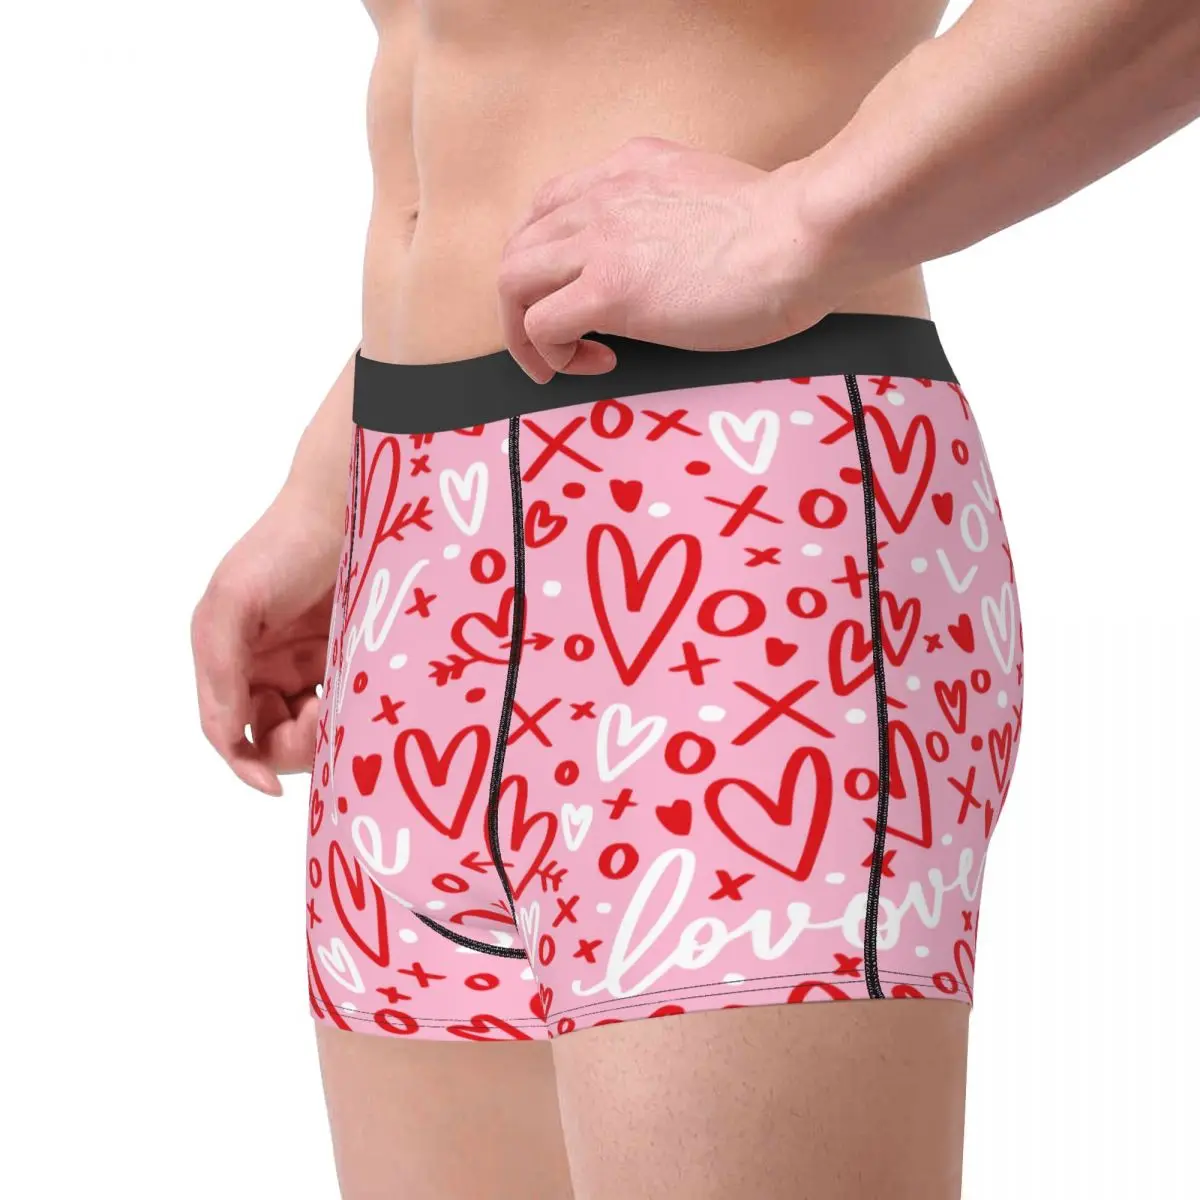 Шорты-трусы Humor Boxer с розовым сердечком, мужское нижнее белье, дышащие трусы для мужчин 1